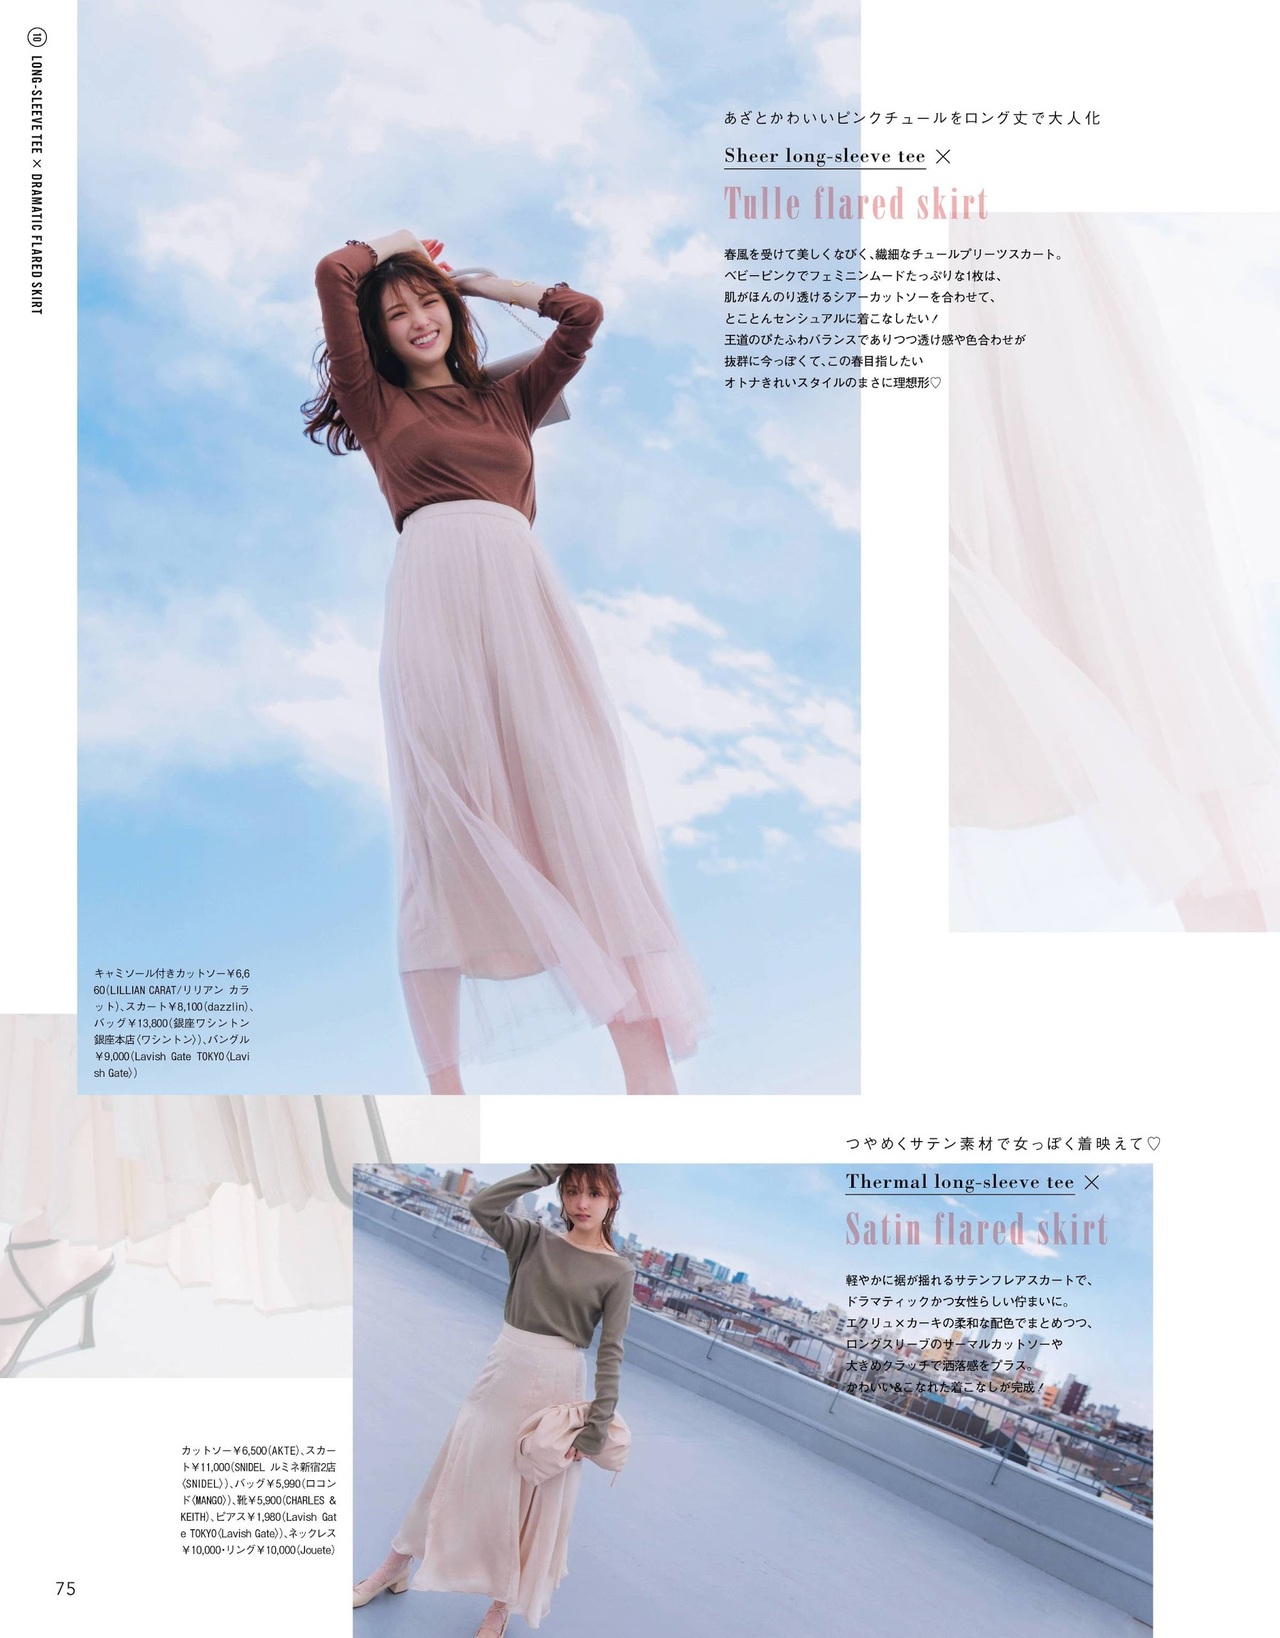 Sayuri Matsumura 松村沙友理, CanCam Magazine 2021.06